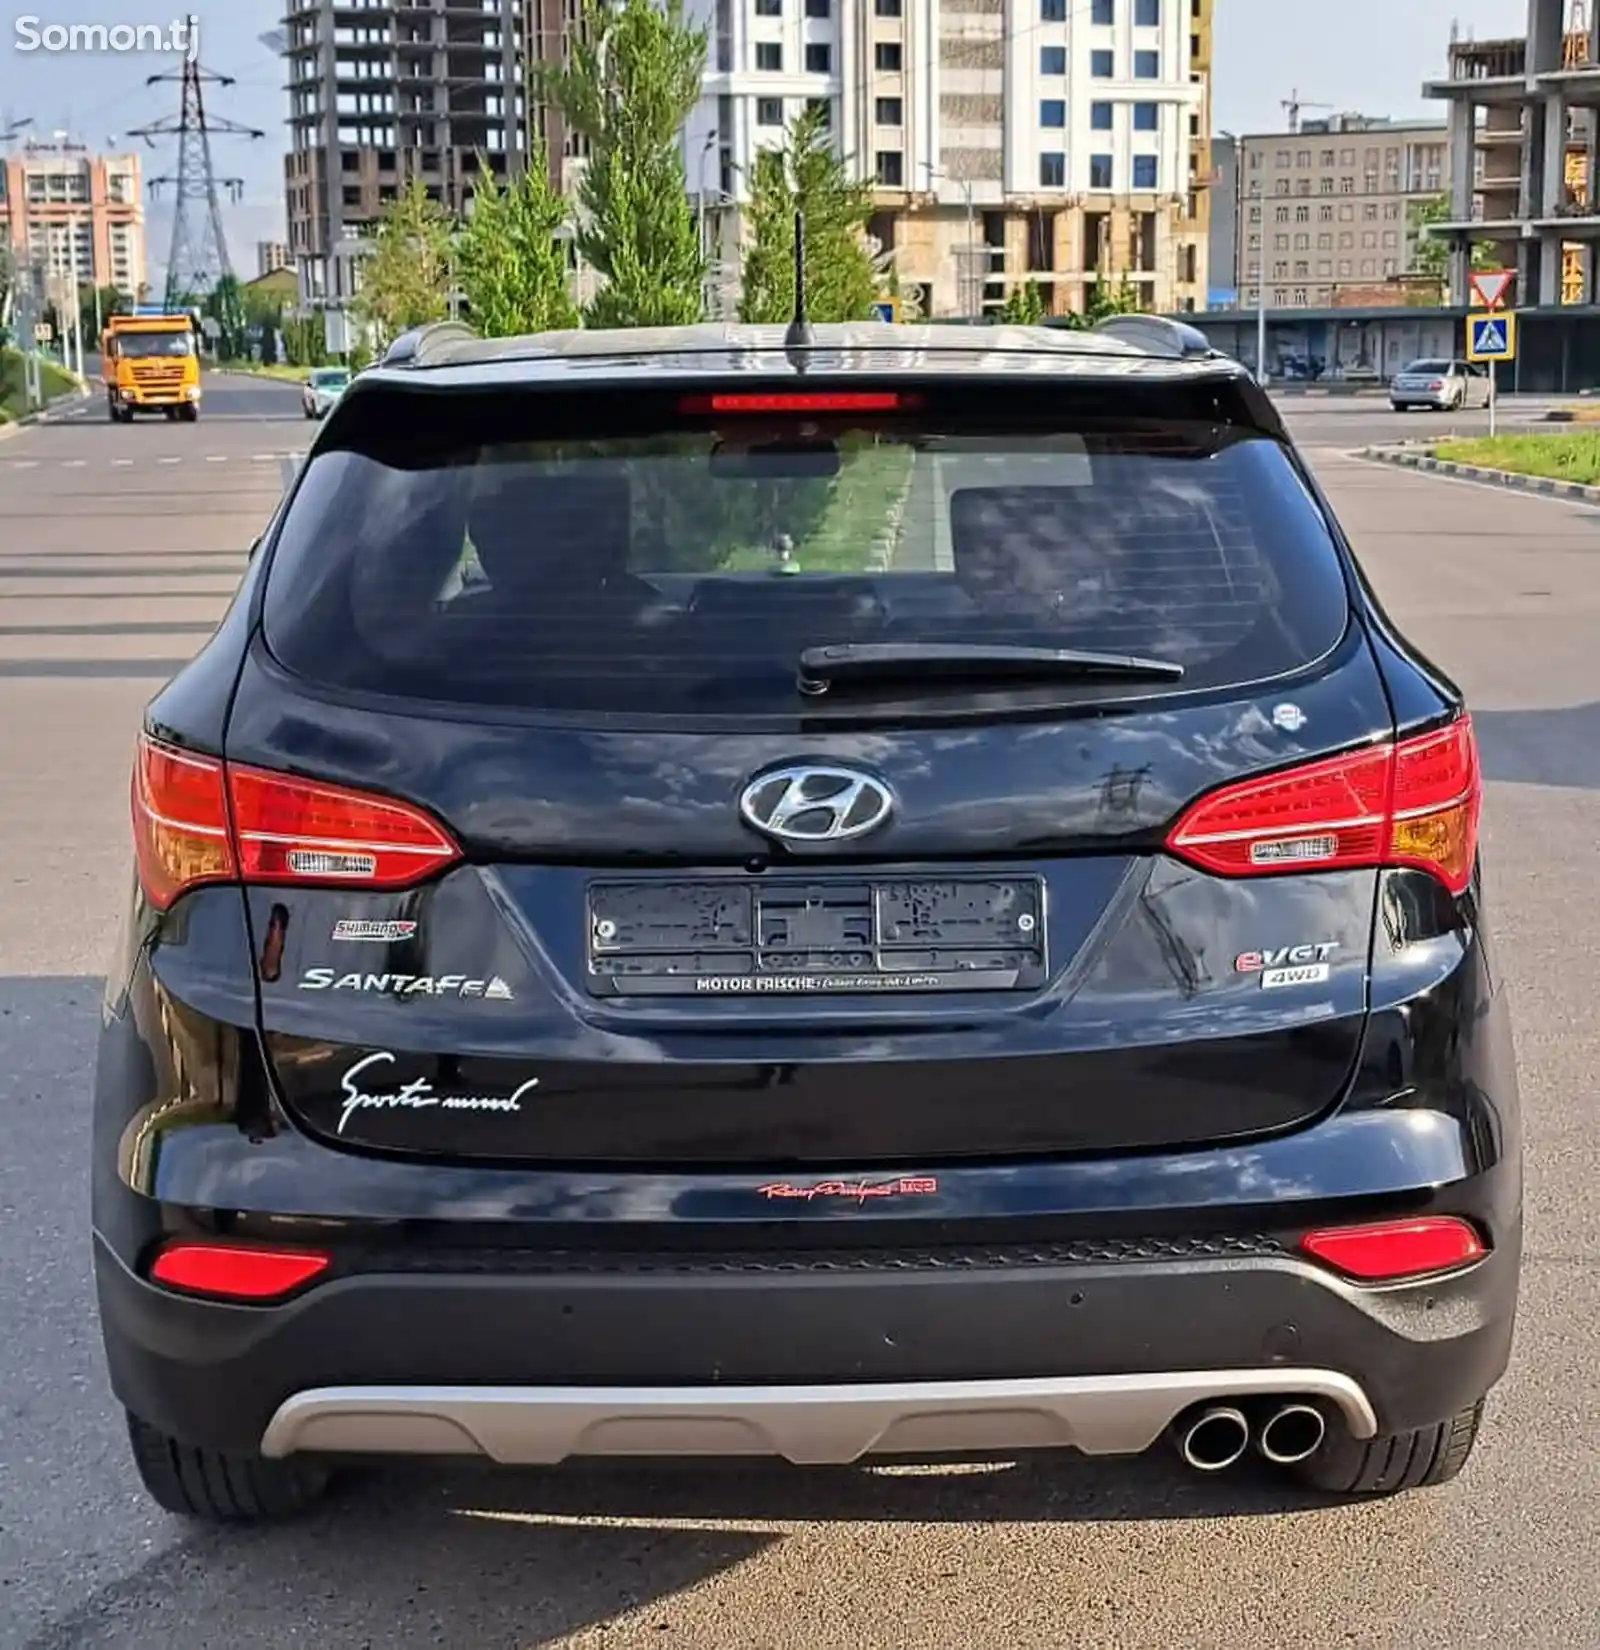 Hyundai Santa Fe, 2014-15